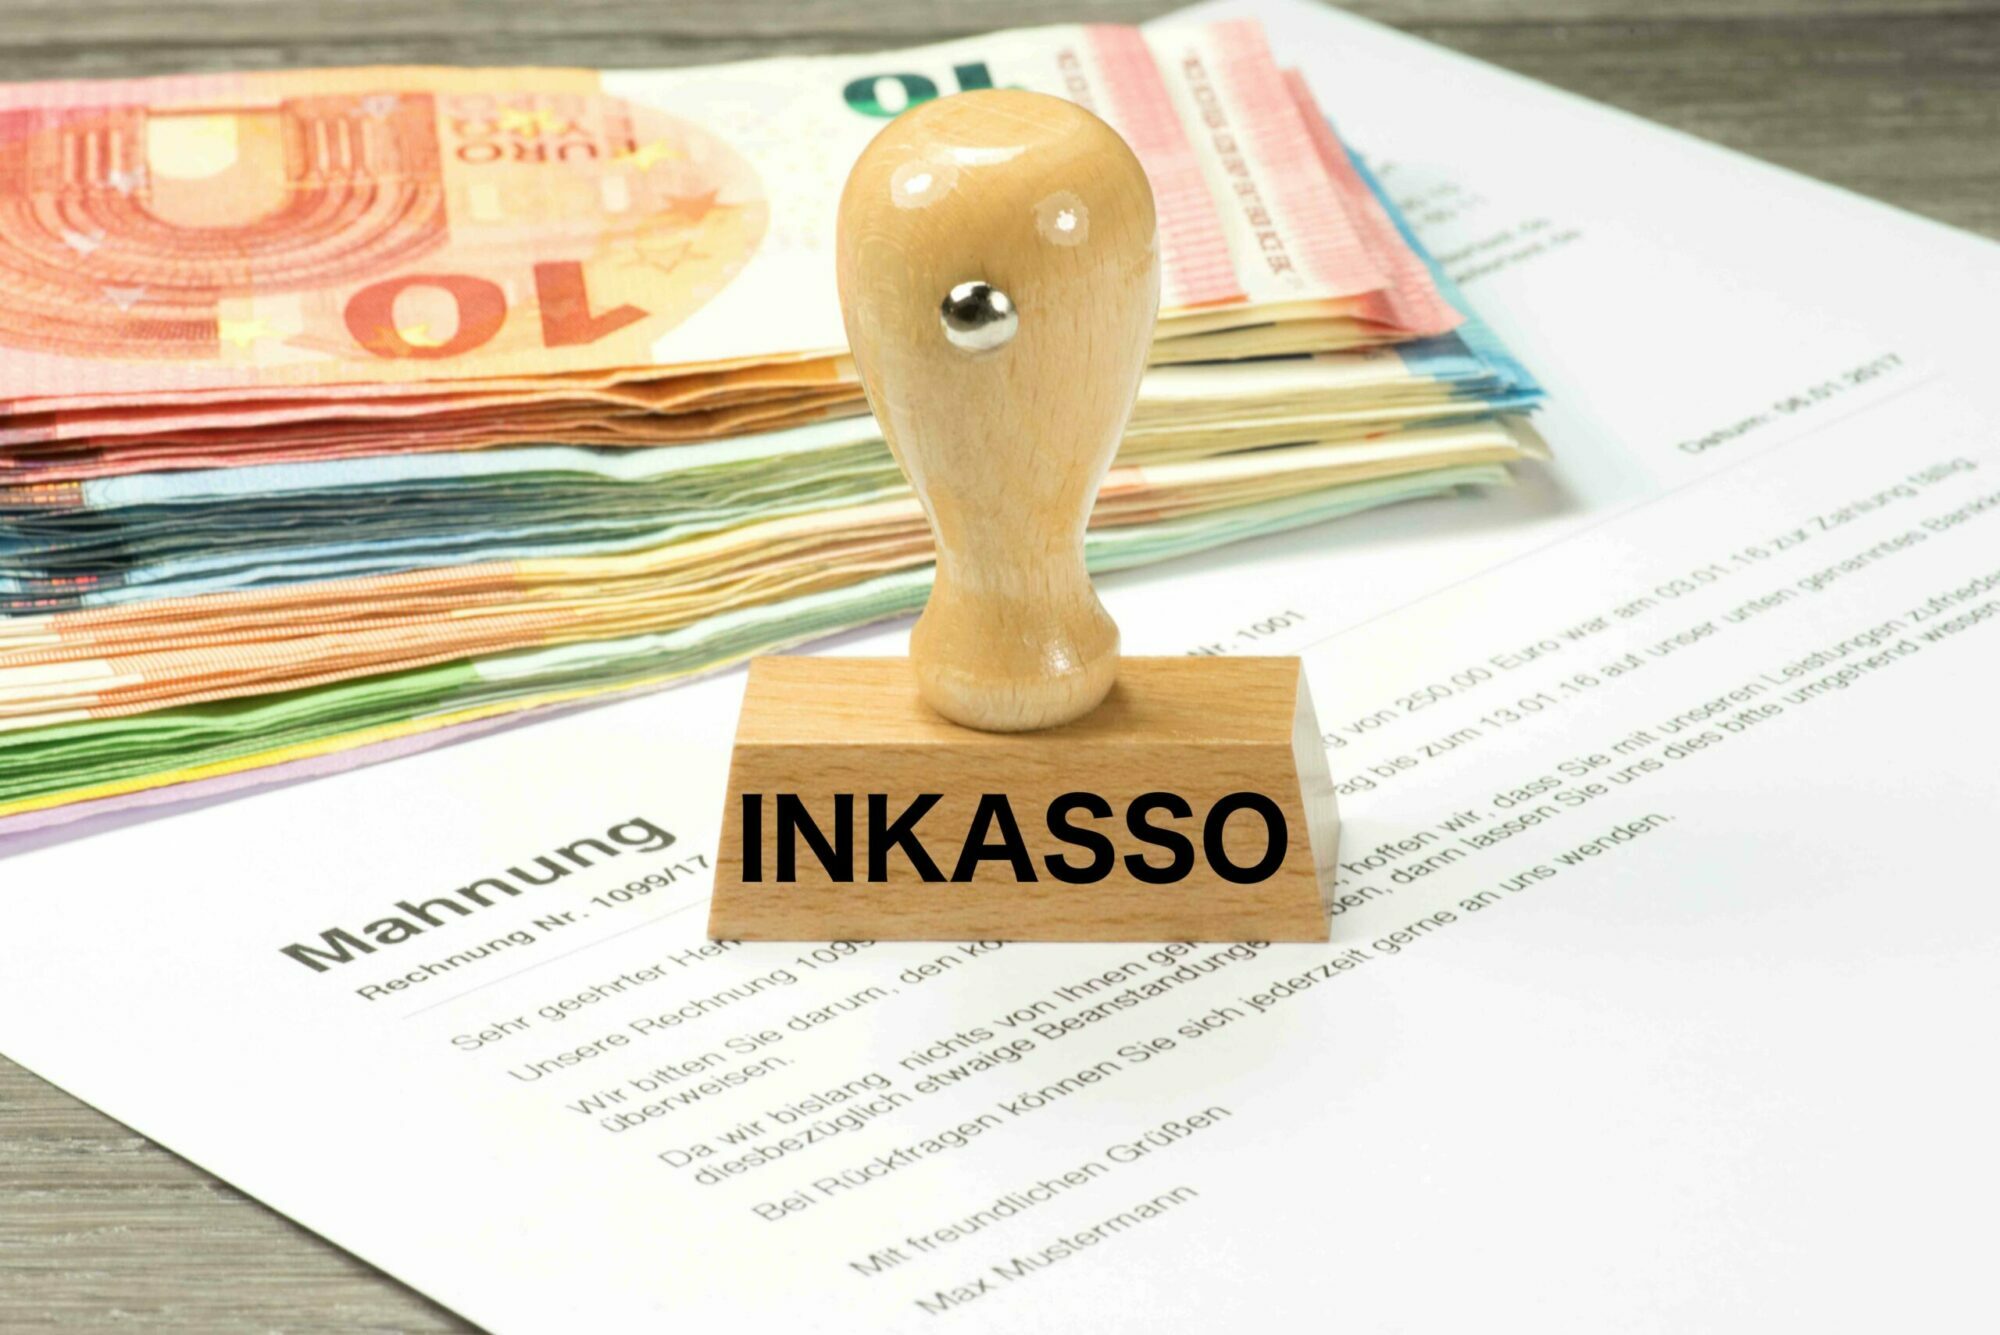 ما هي شركة تحصيل الديون inkasso